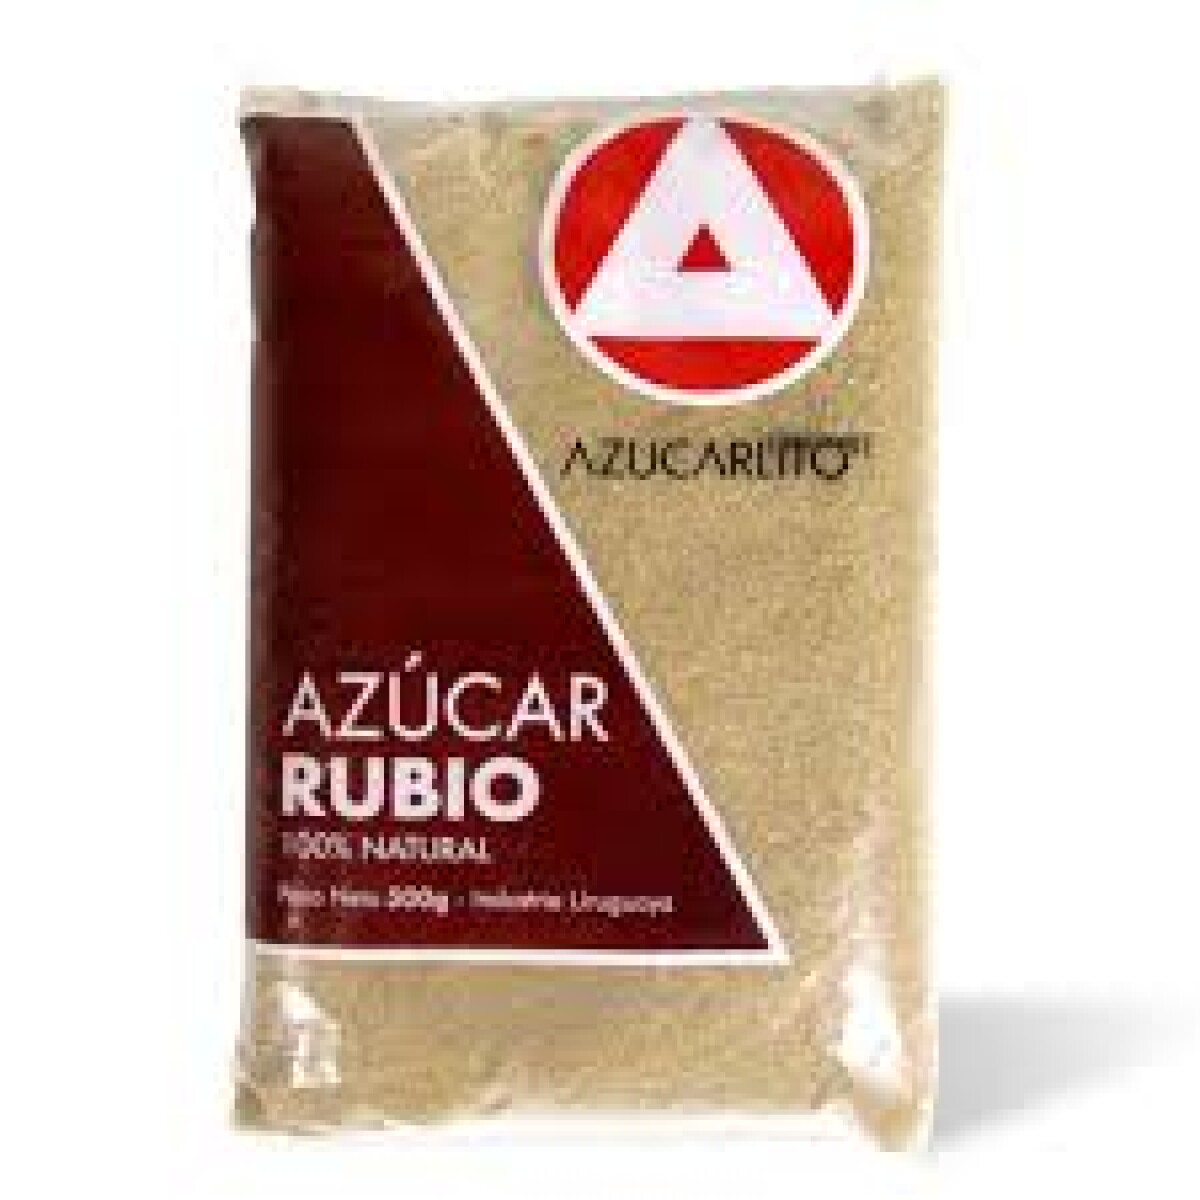 AZUCAR RUBIA AZUCARLITO 500G 